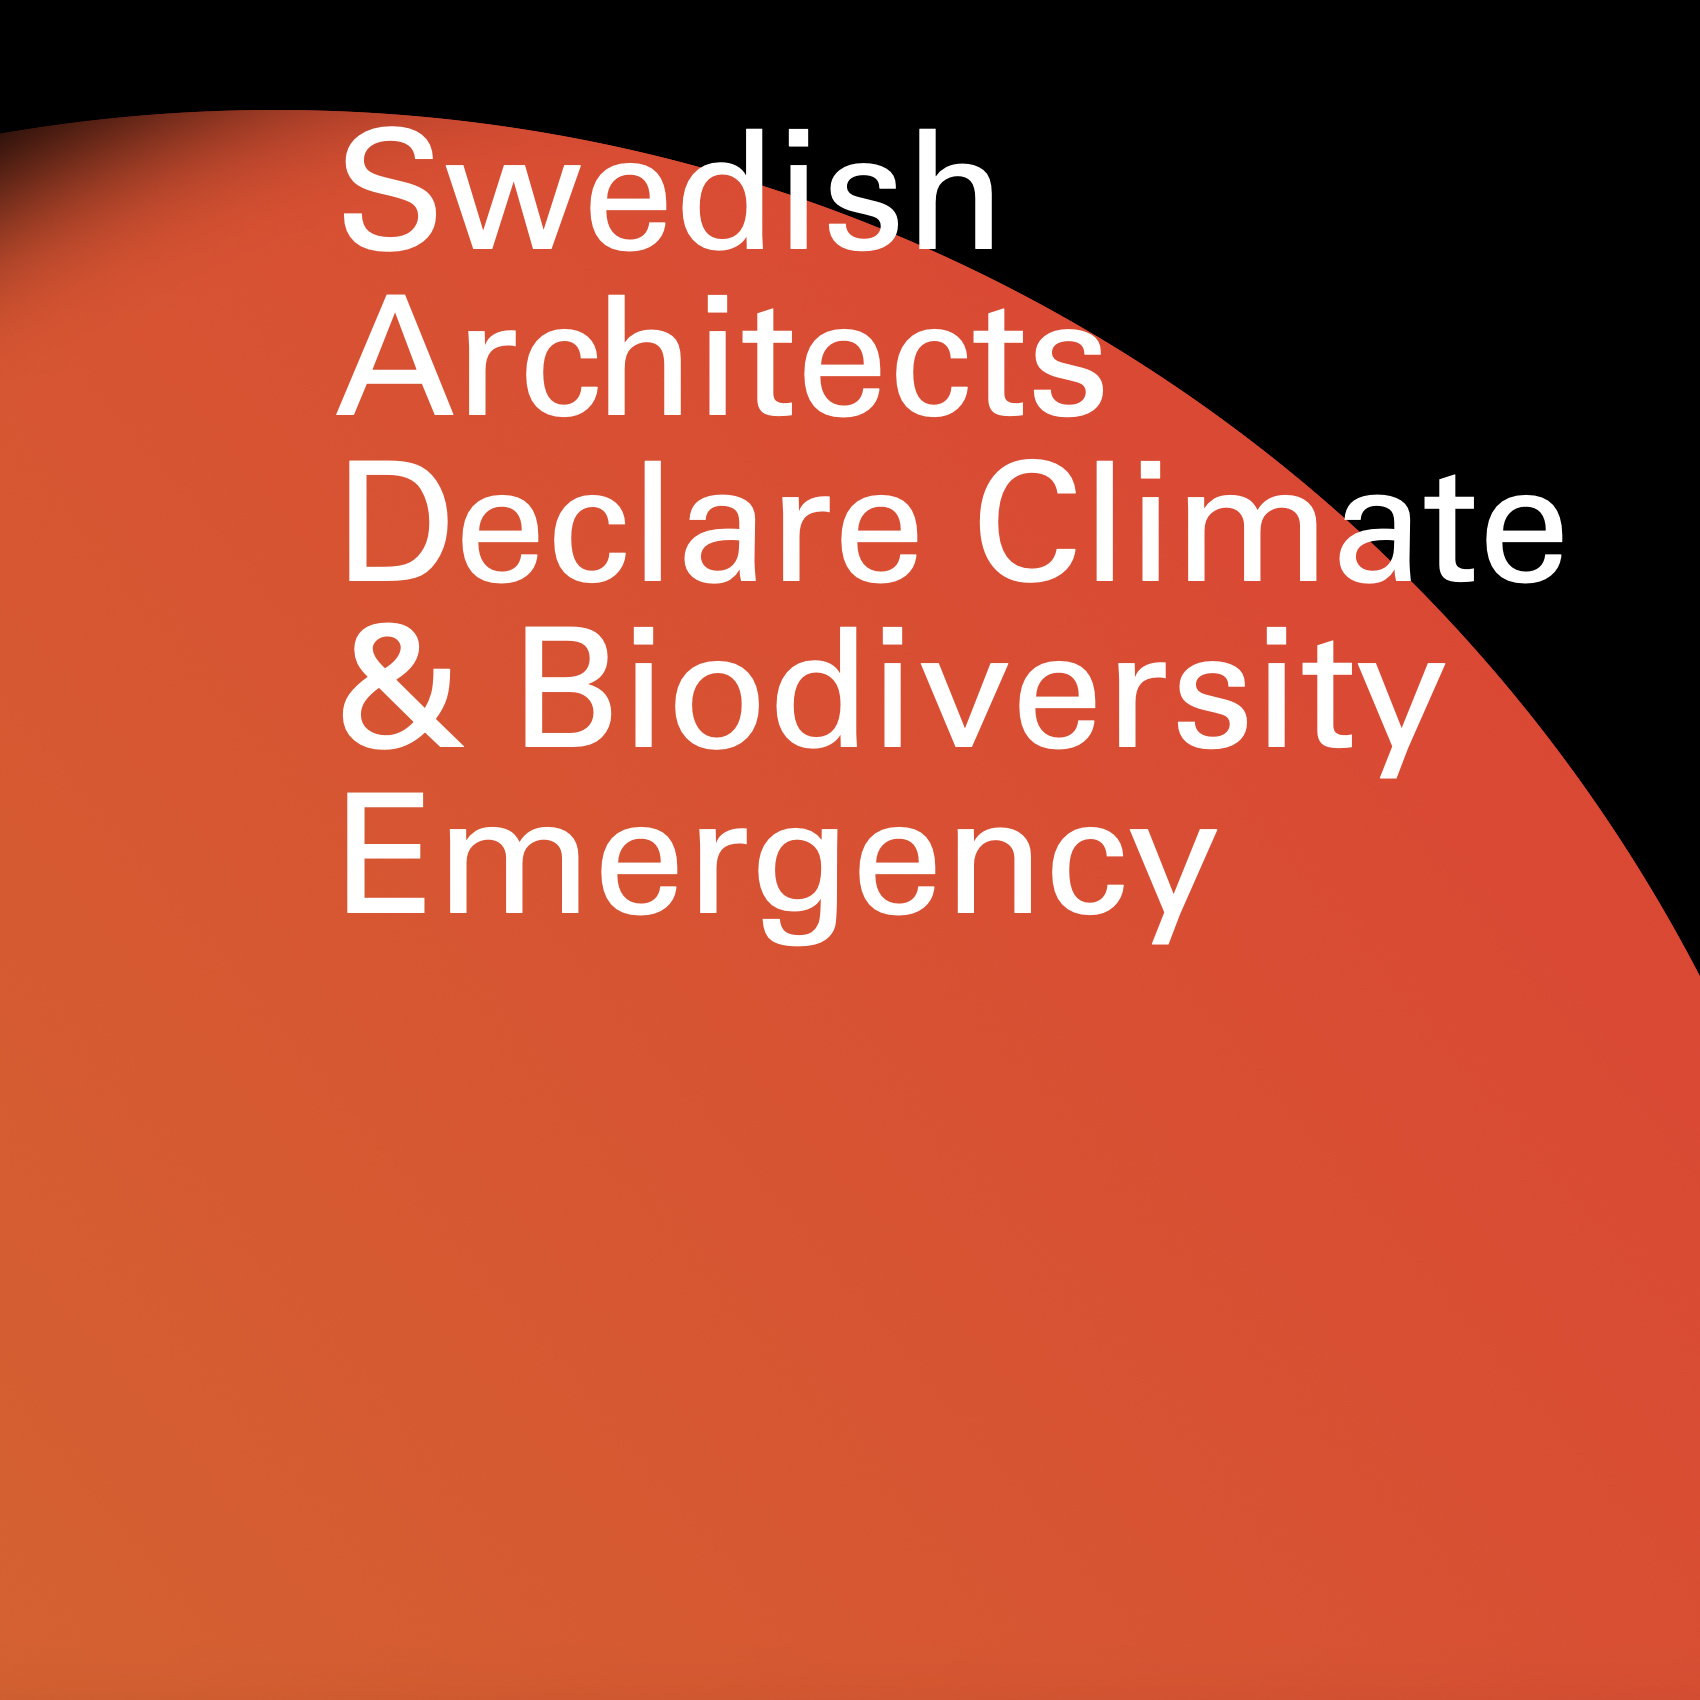 Bild från "Architects Declare" – en webbsida där arkitektkontor kan skriva under ett upprop för att arbeta mer klimatsmart.
